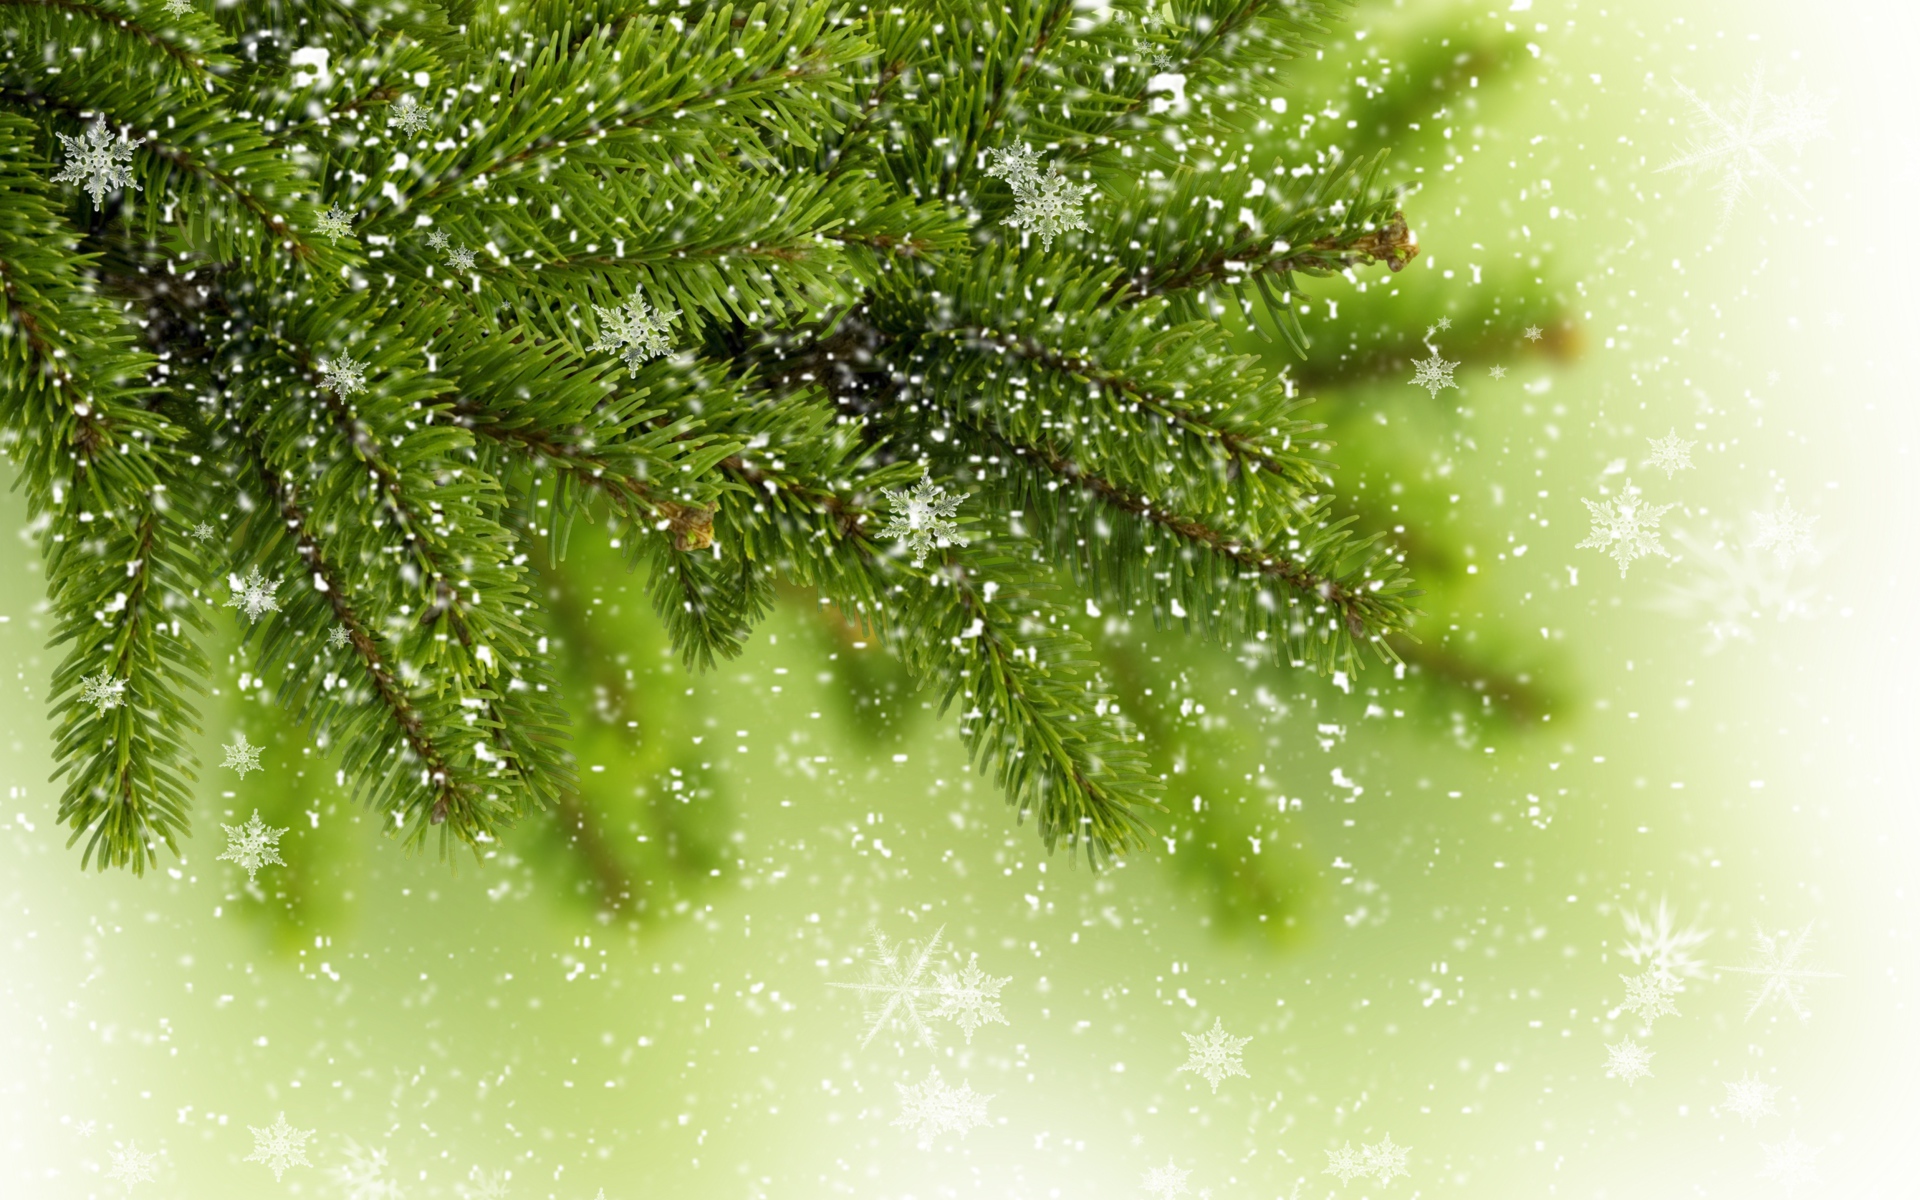 Снежинки на ветке елки - C Рождеством Христовым поздравительные картинки